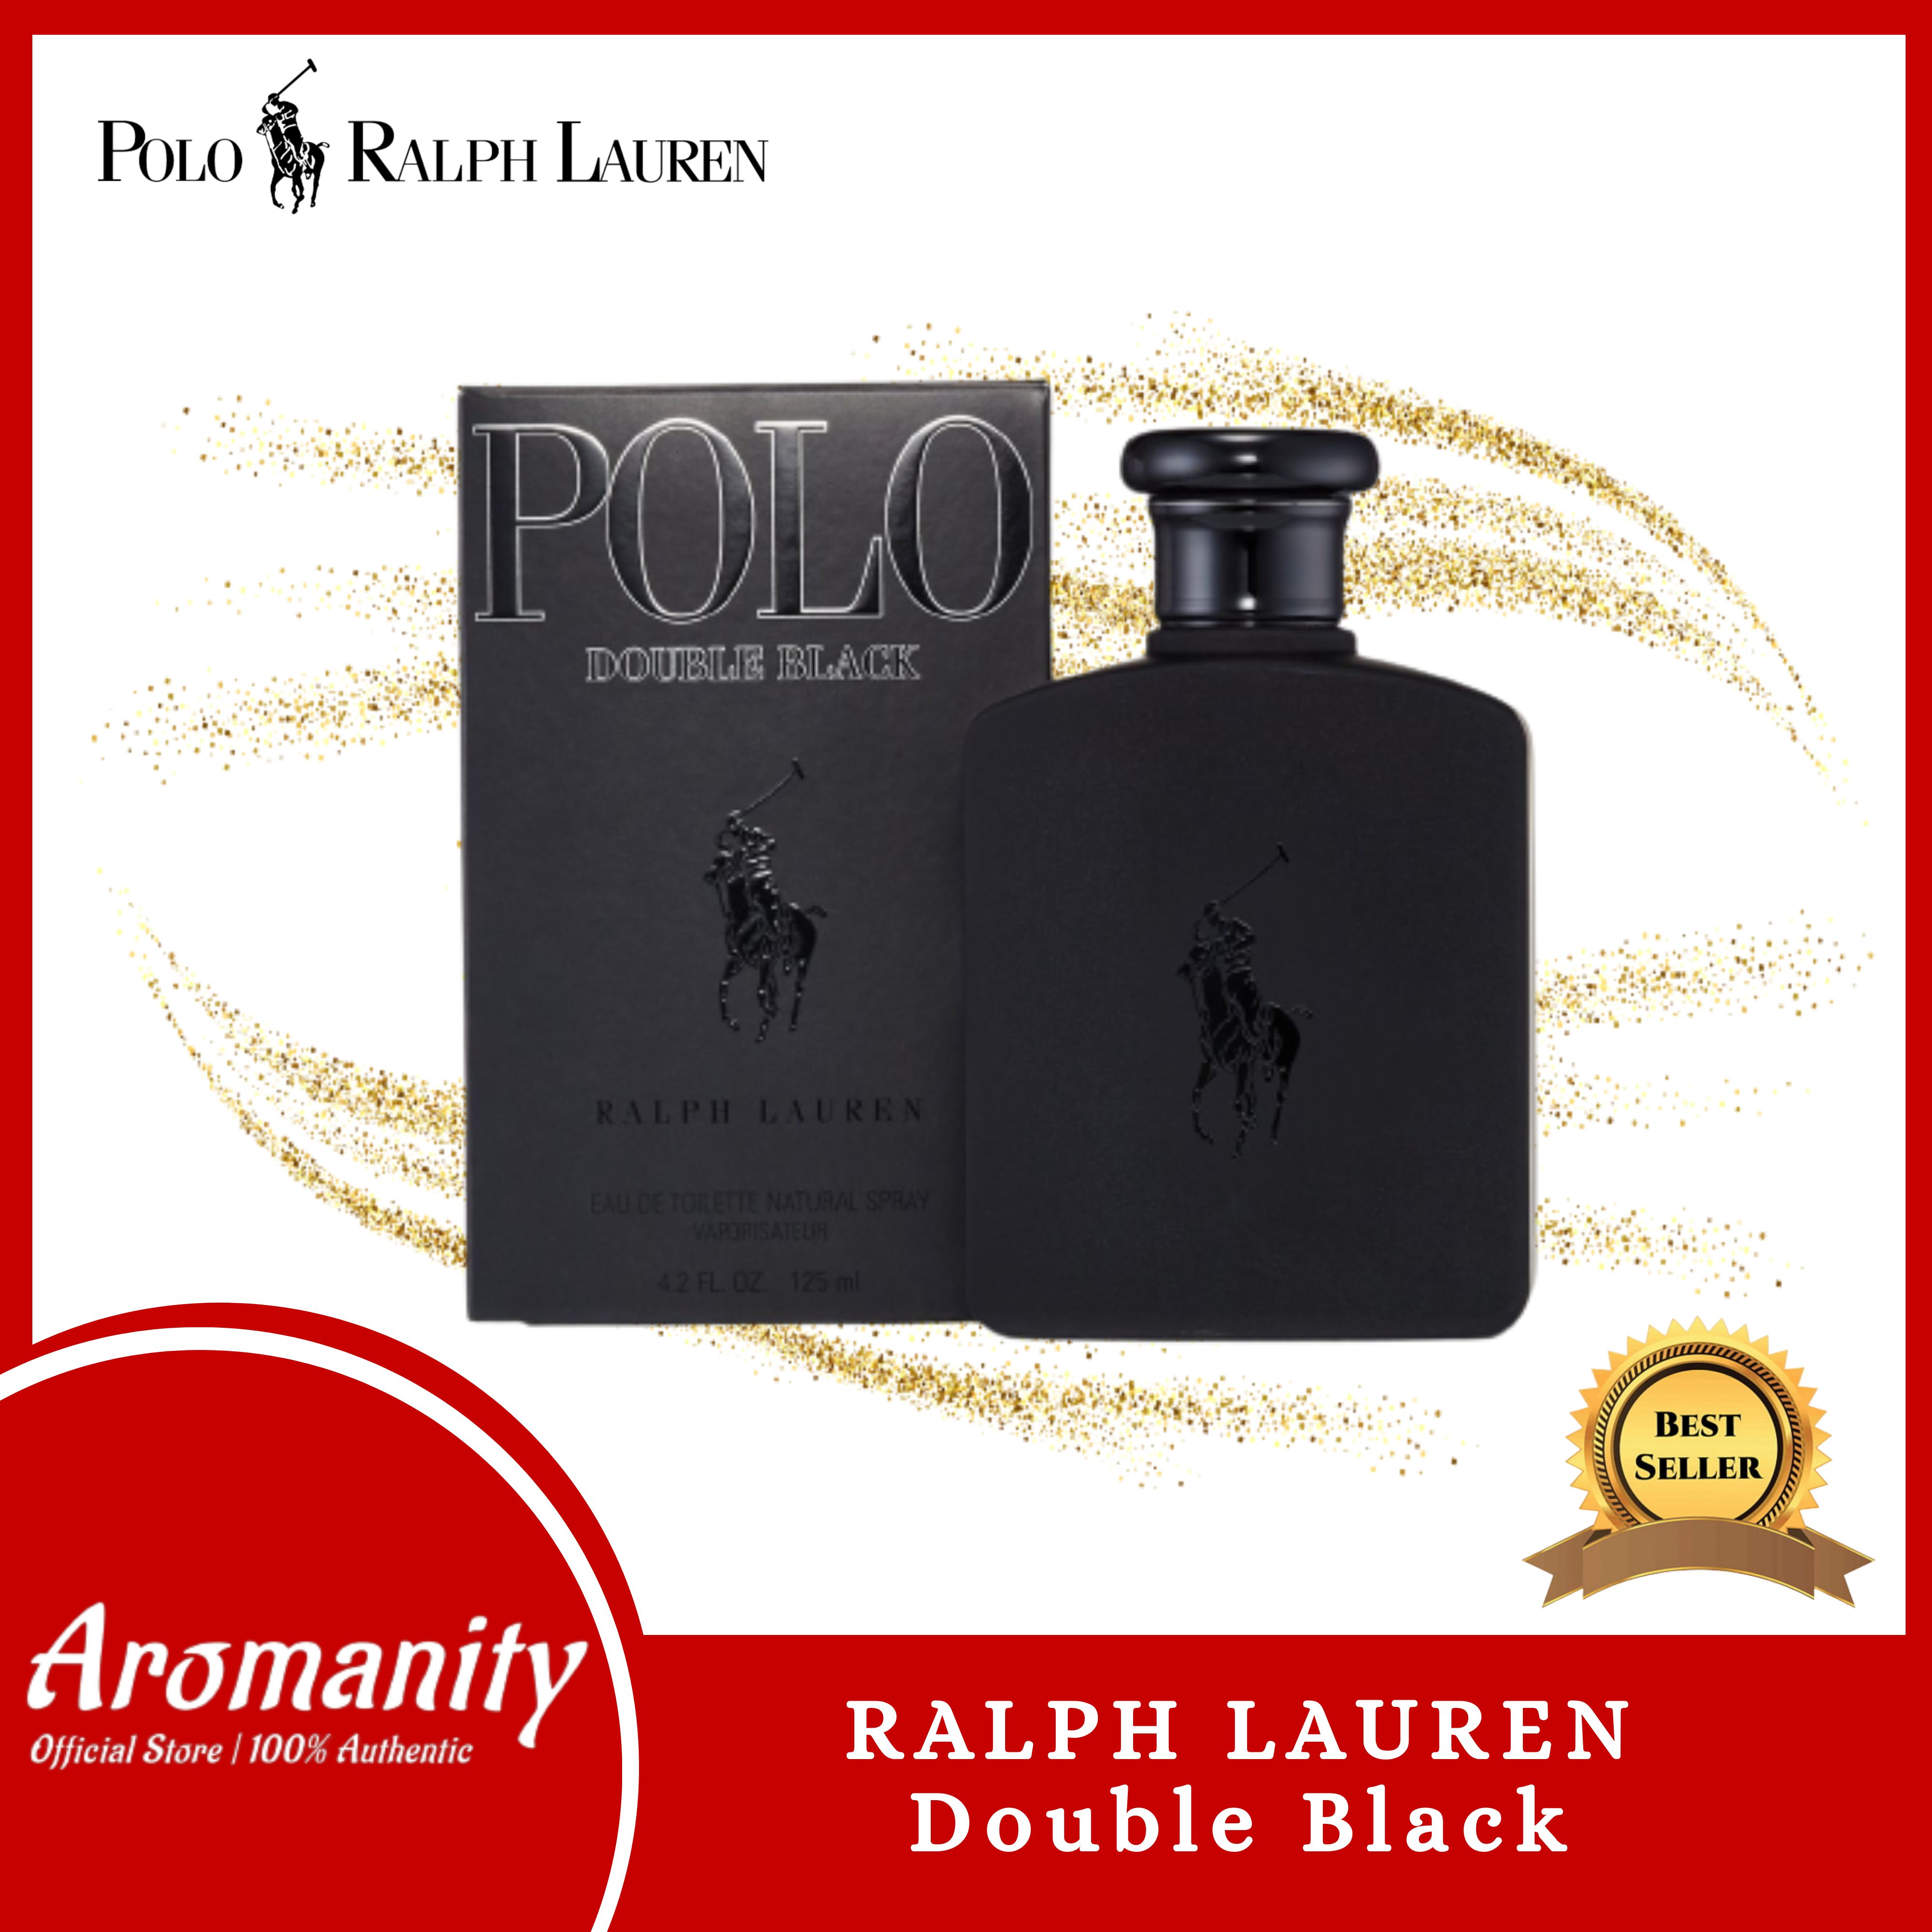 AROMANITY [!Ralph Lauren Polo Black Eau de Toilette for Men 100ml ], Perfume For Men, Oil Base, Long Lasting Scent, pabango panlalaki, oil  based perfume for men